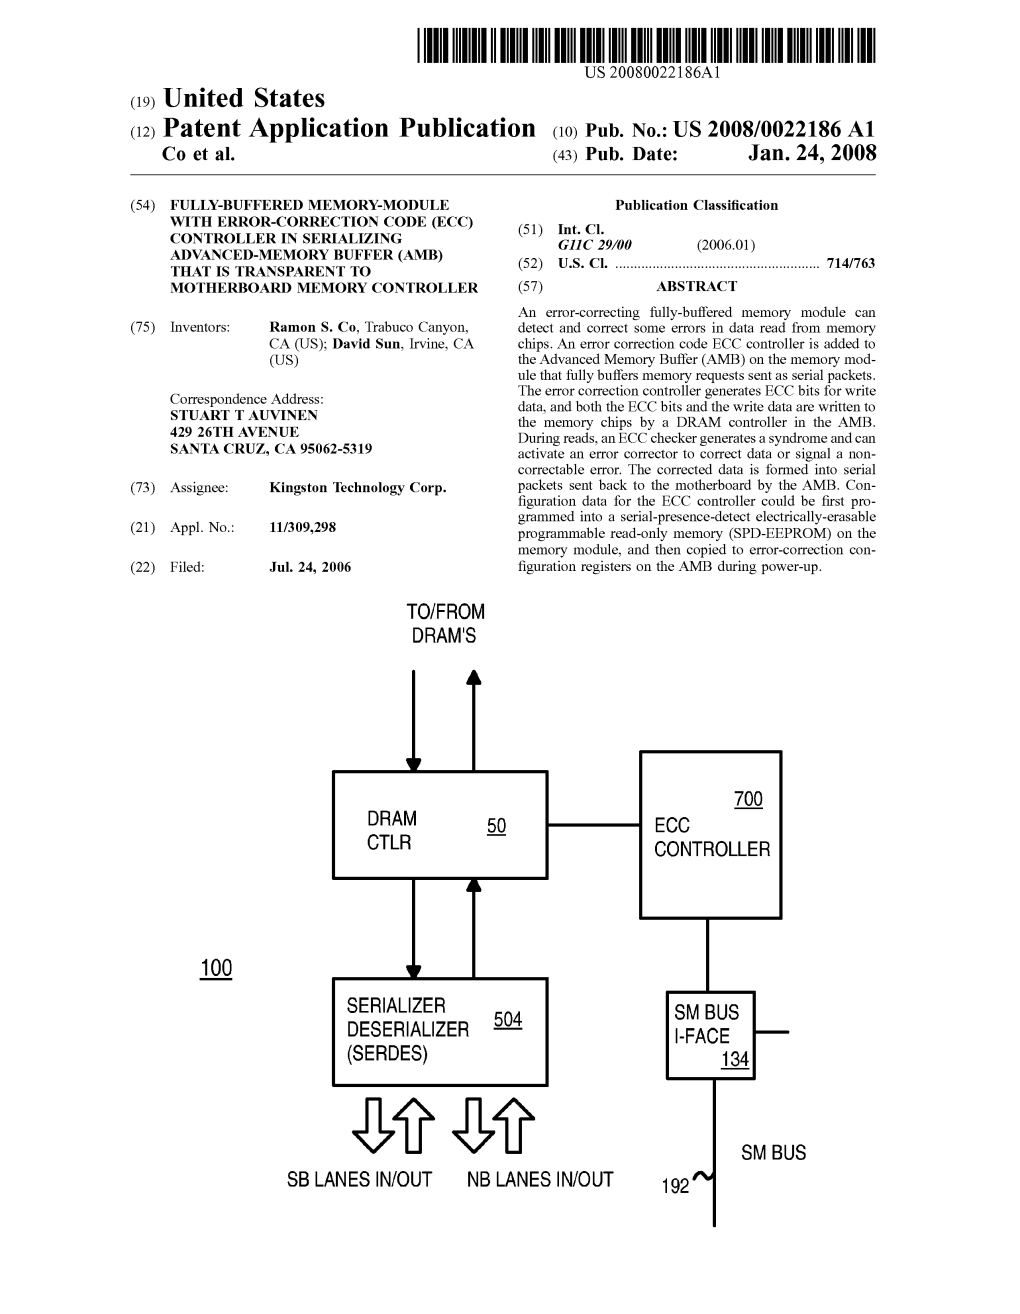 Patent Application Publication (10) Pub. No.: US 2008/0022186 A1 Co Et Al